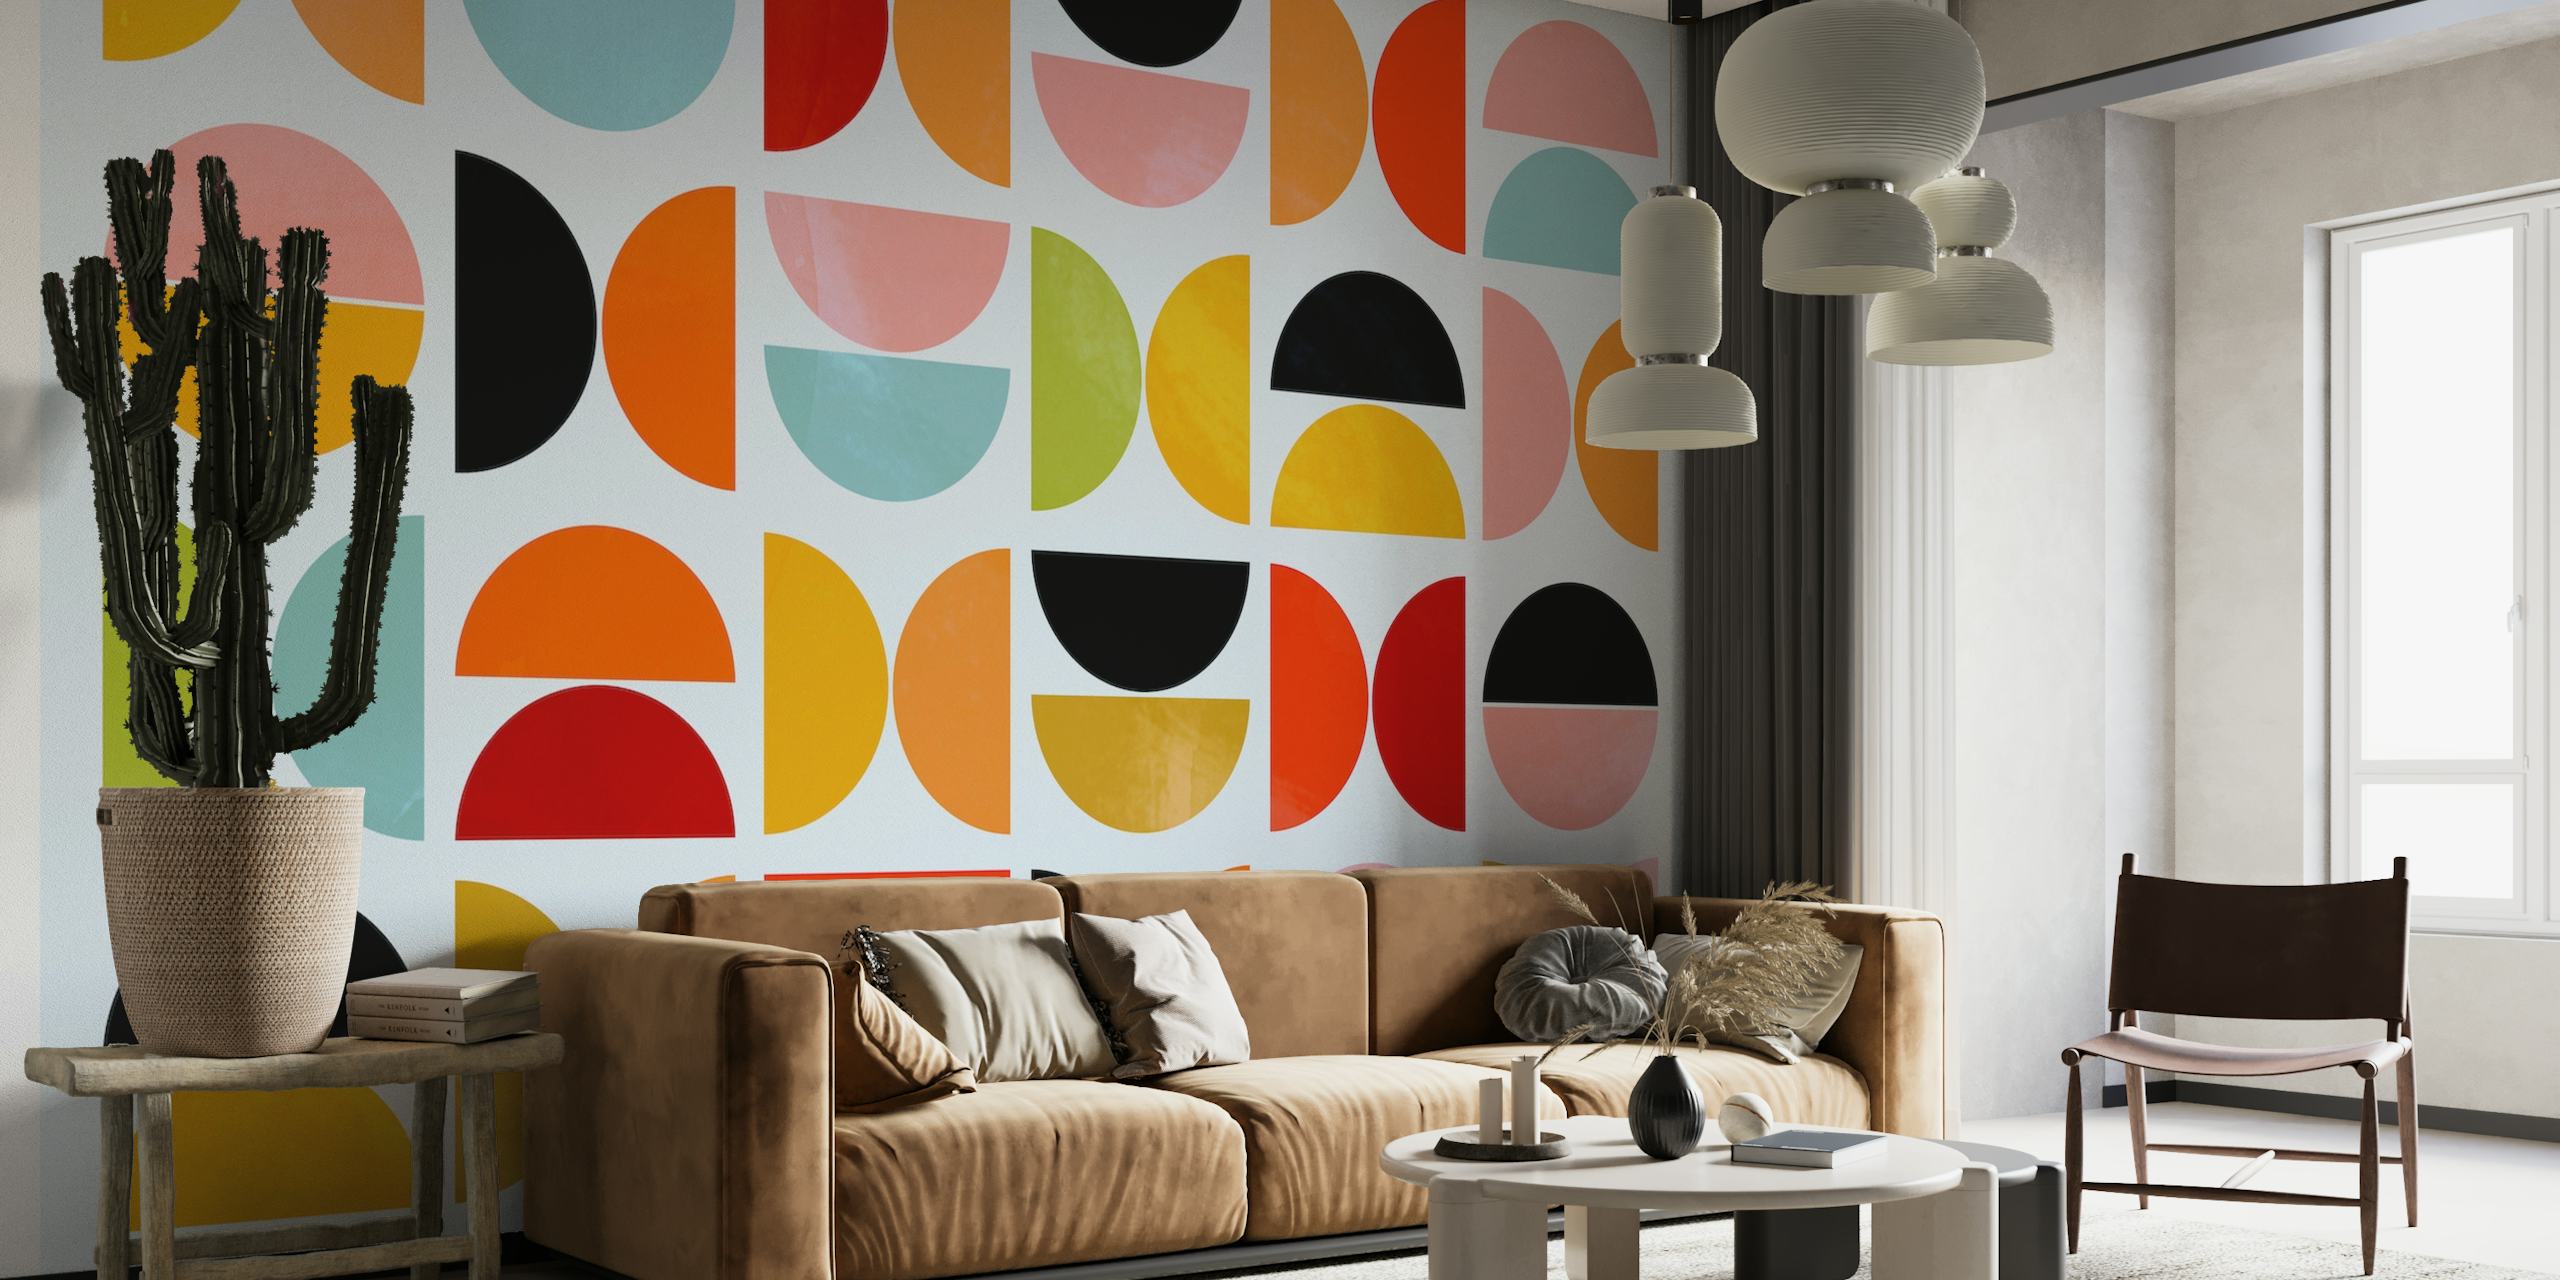 Eläviä geometrisia muotoja Bauhausin inspiroimassa seinämaalauksessa.